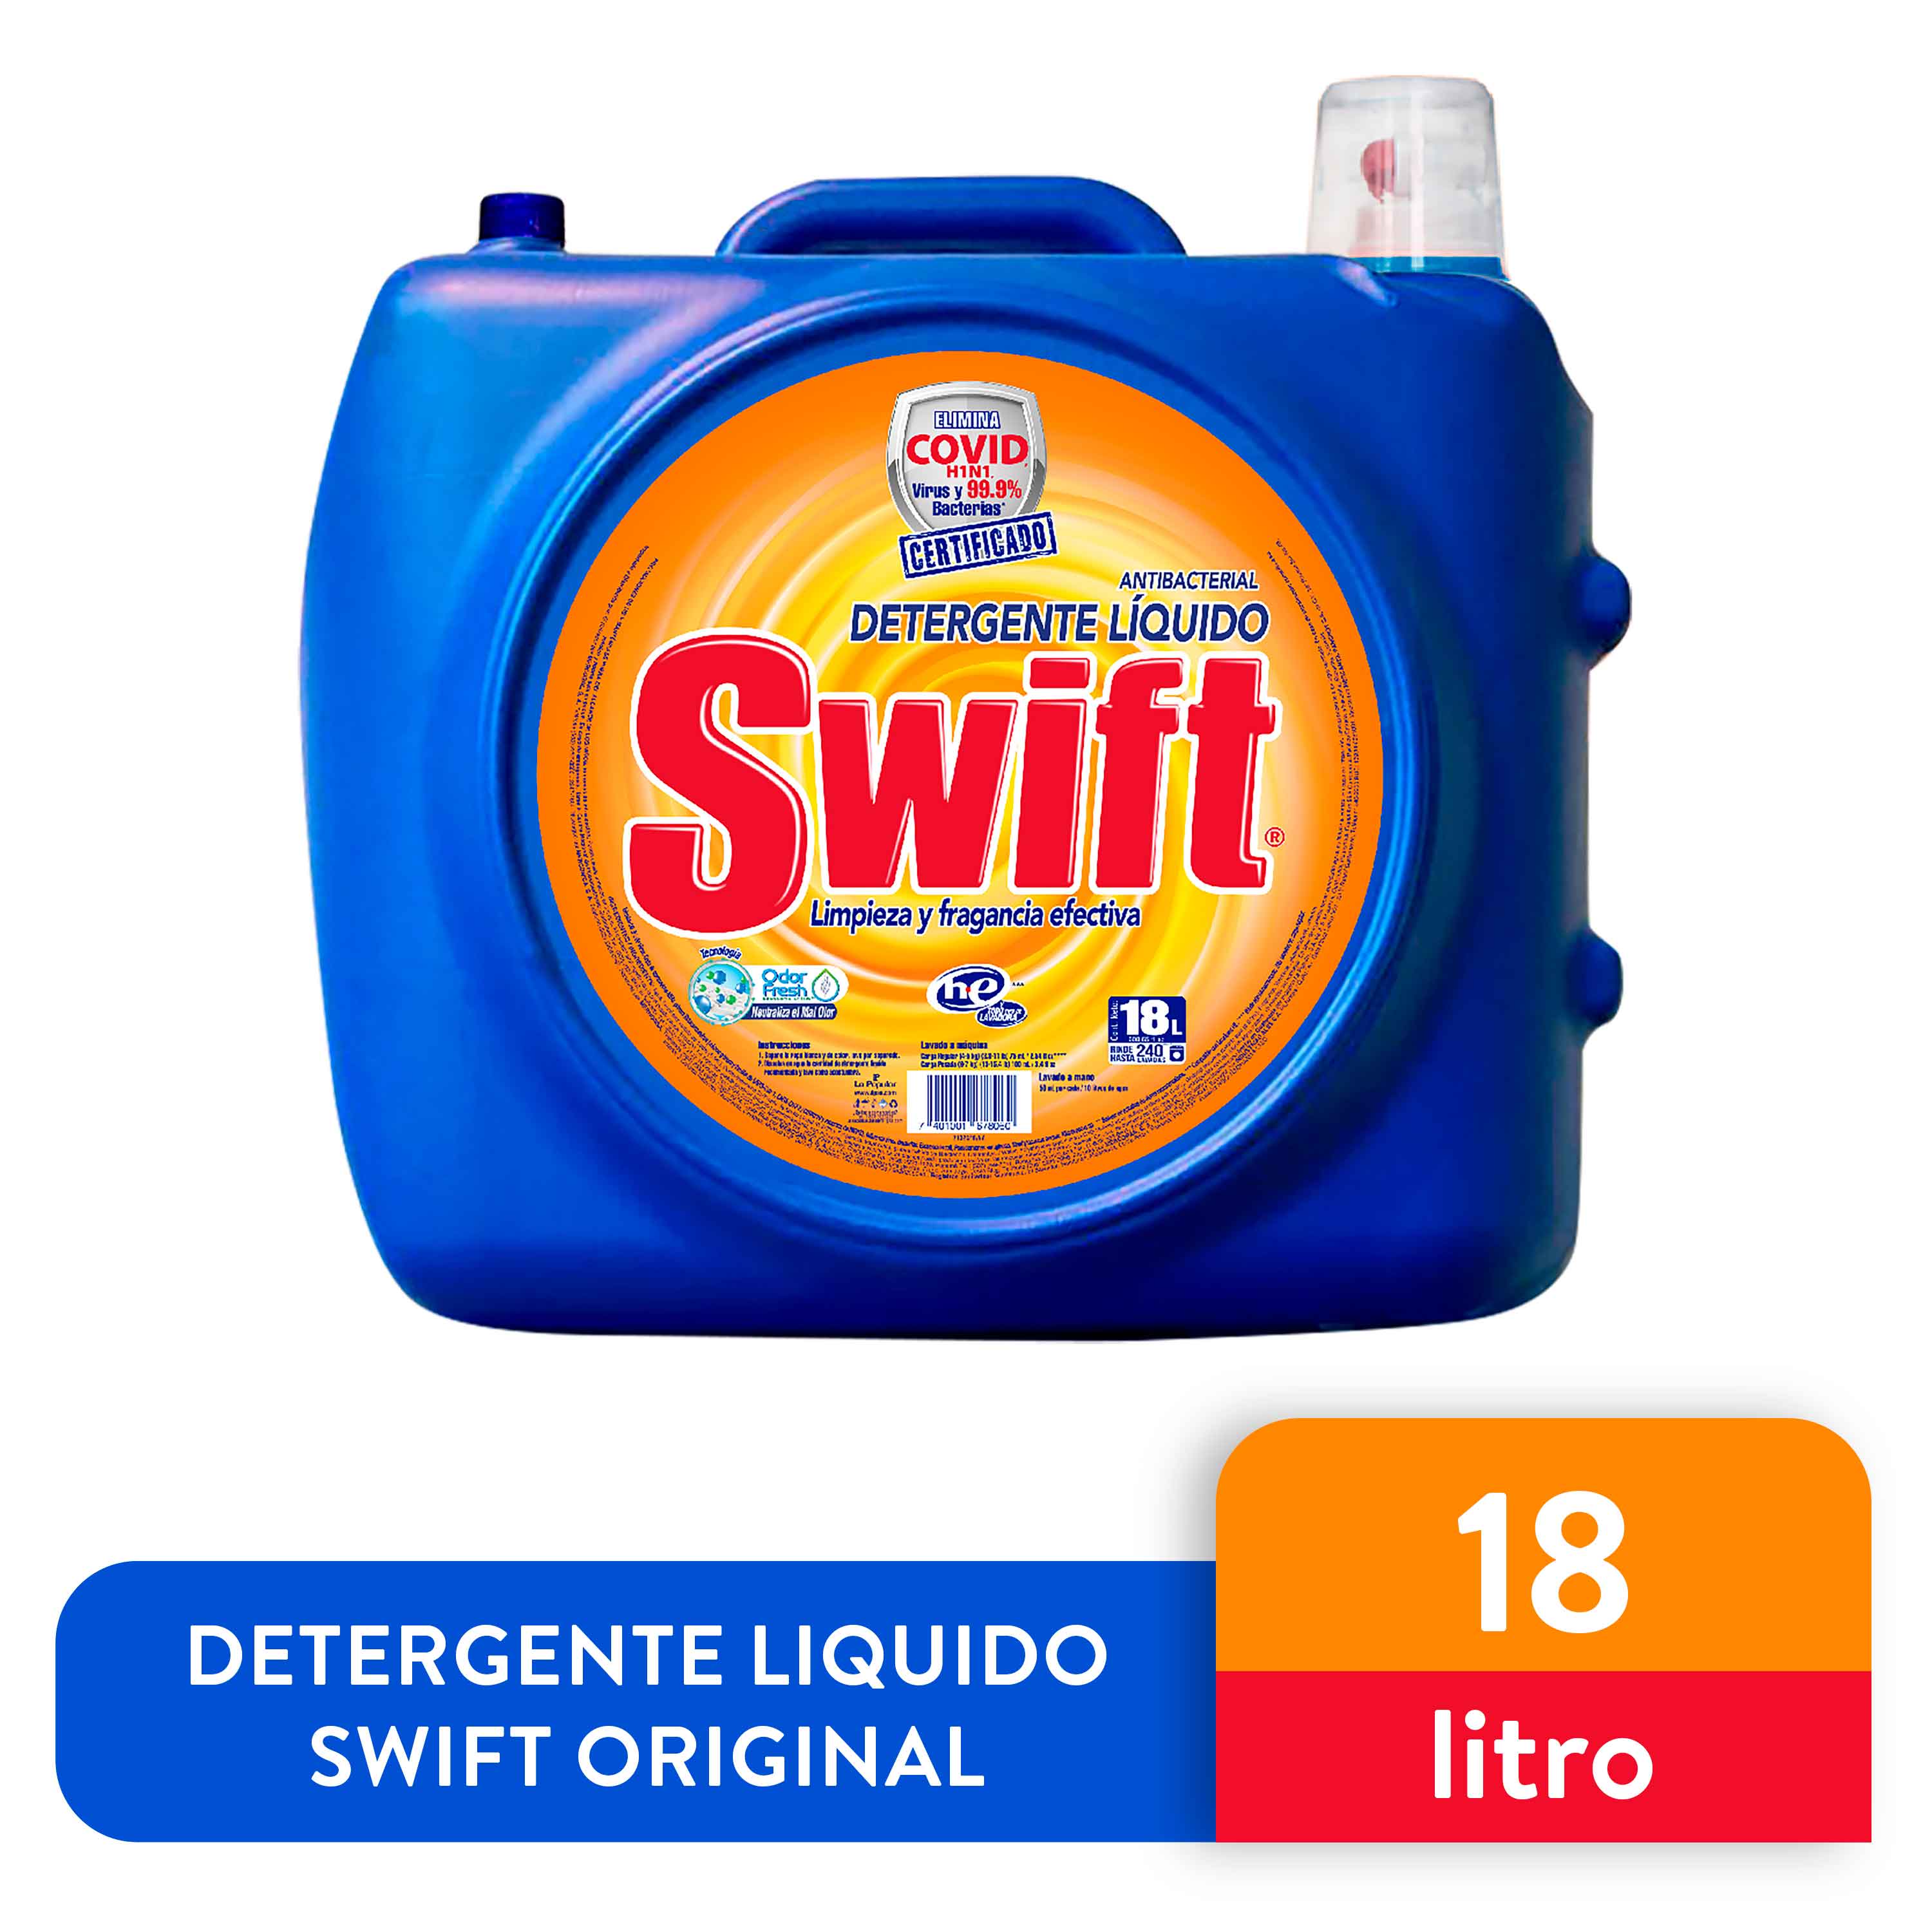 Detergente-Liquido-Swift-Original-18-Lt-1-26863